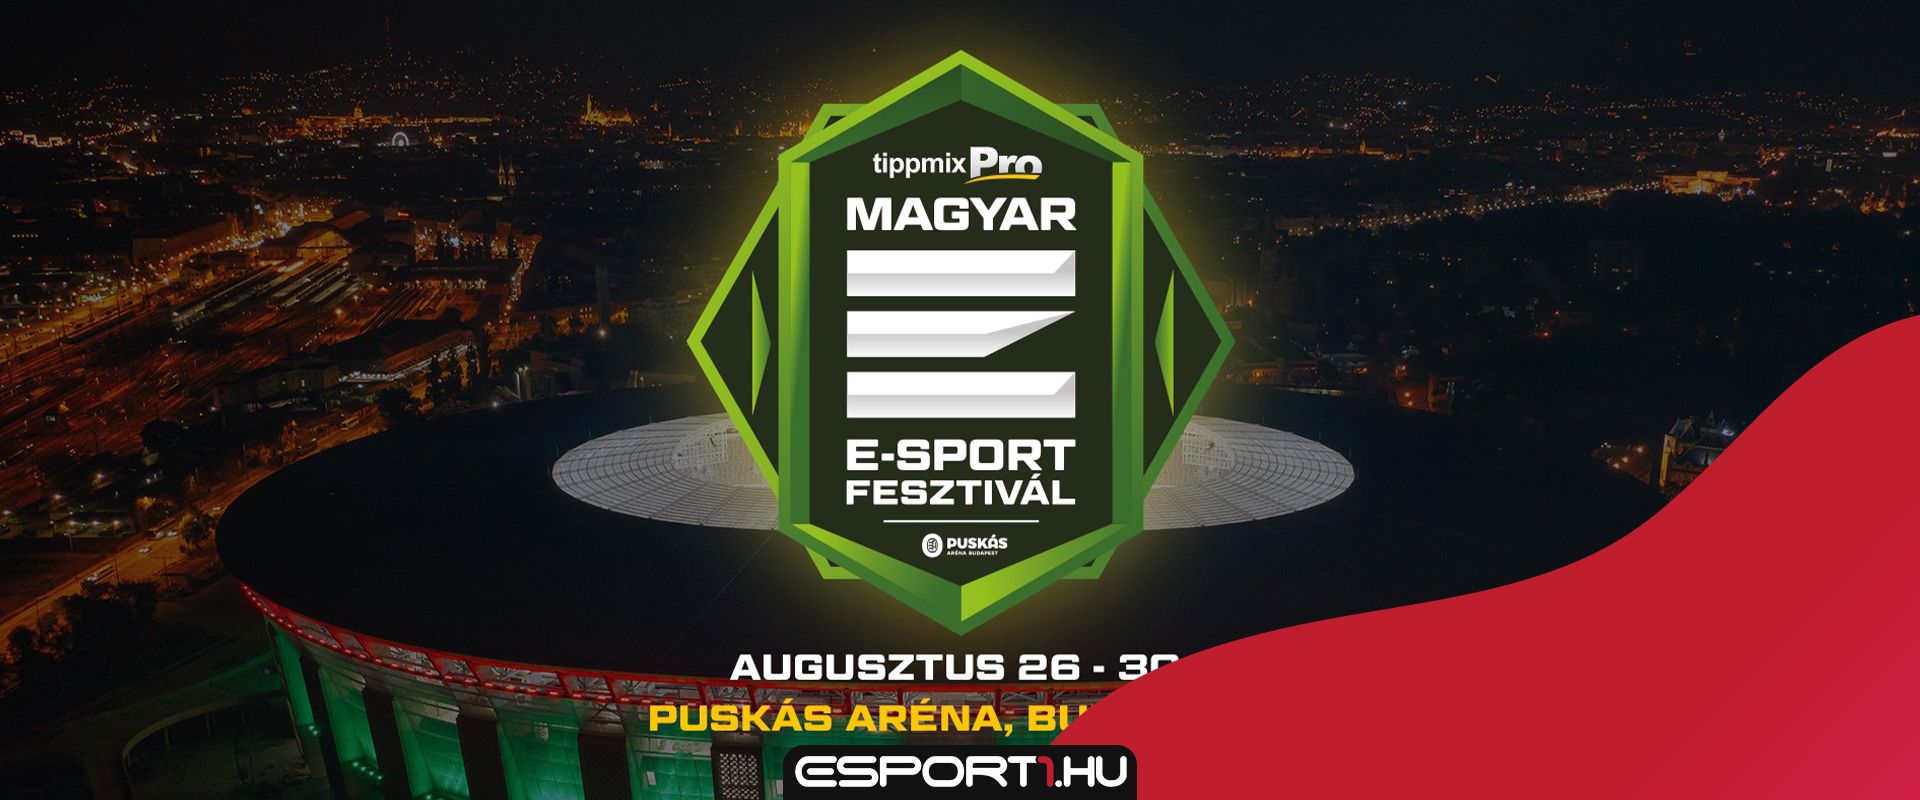 Hivatalos: Új dátummal rendezik meg a TippmixPro Magyar E-sport Fesztivált